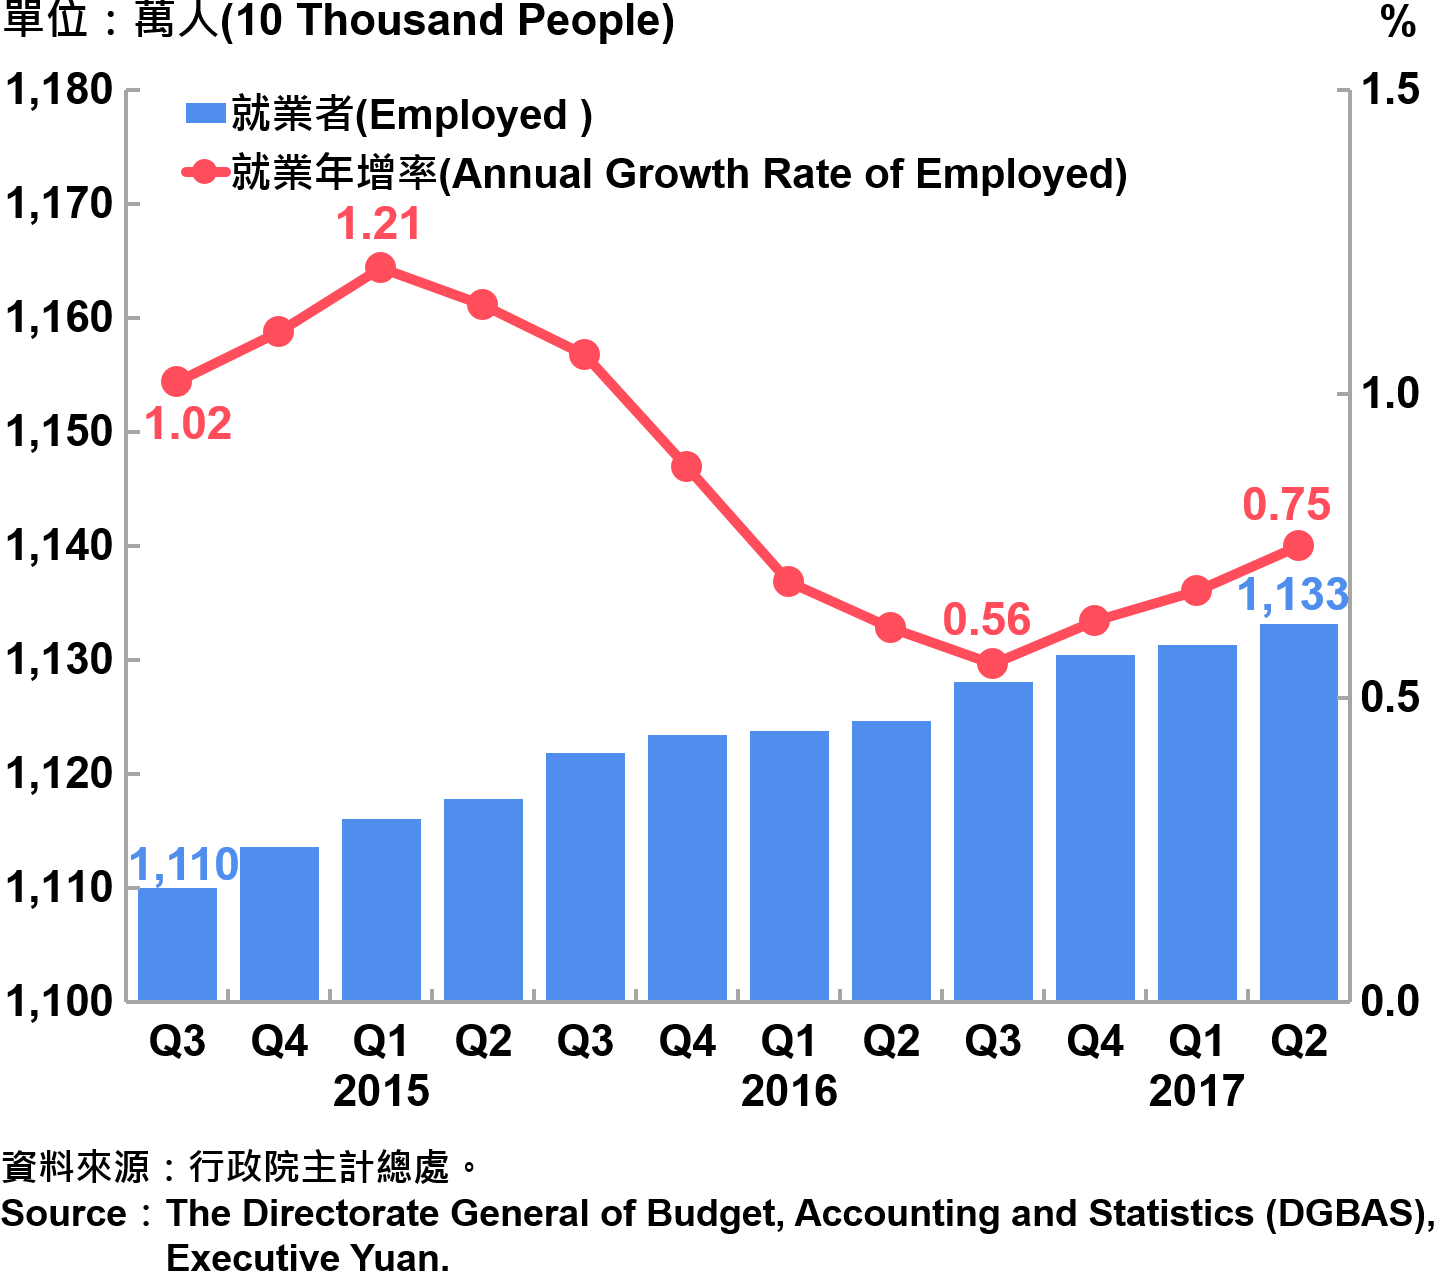 圖6-1　就業人數及就業成長率 Employed and Annual Growth Rate of Employed